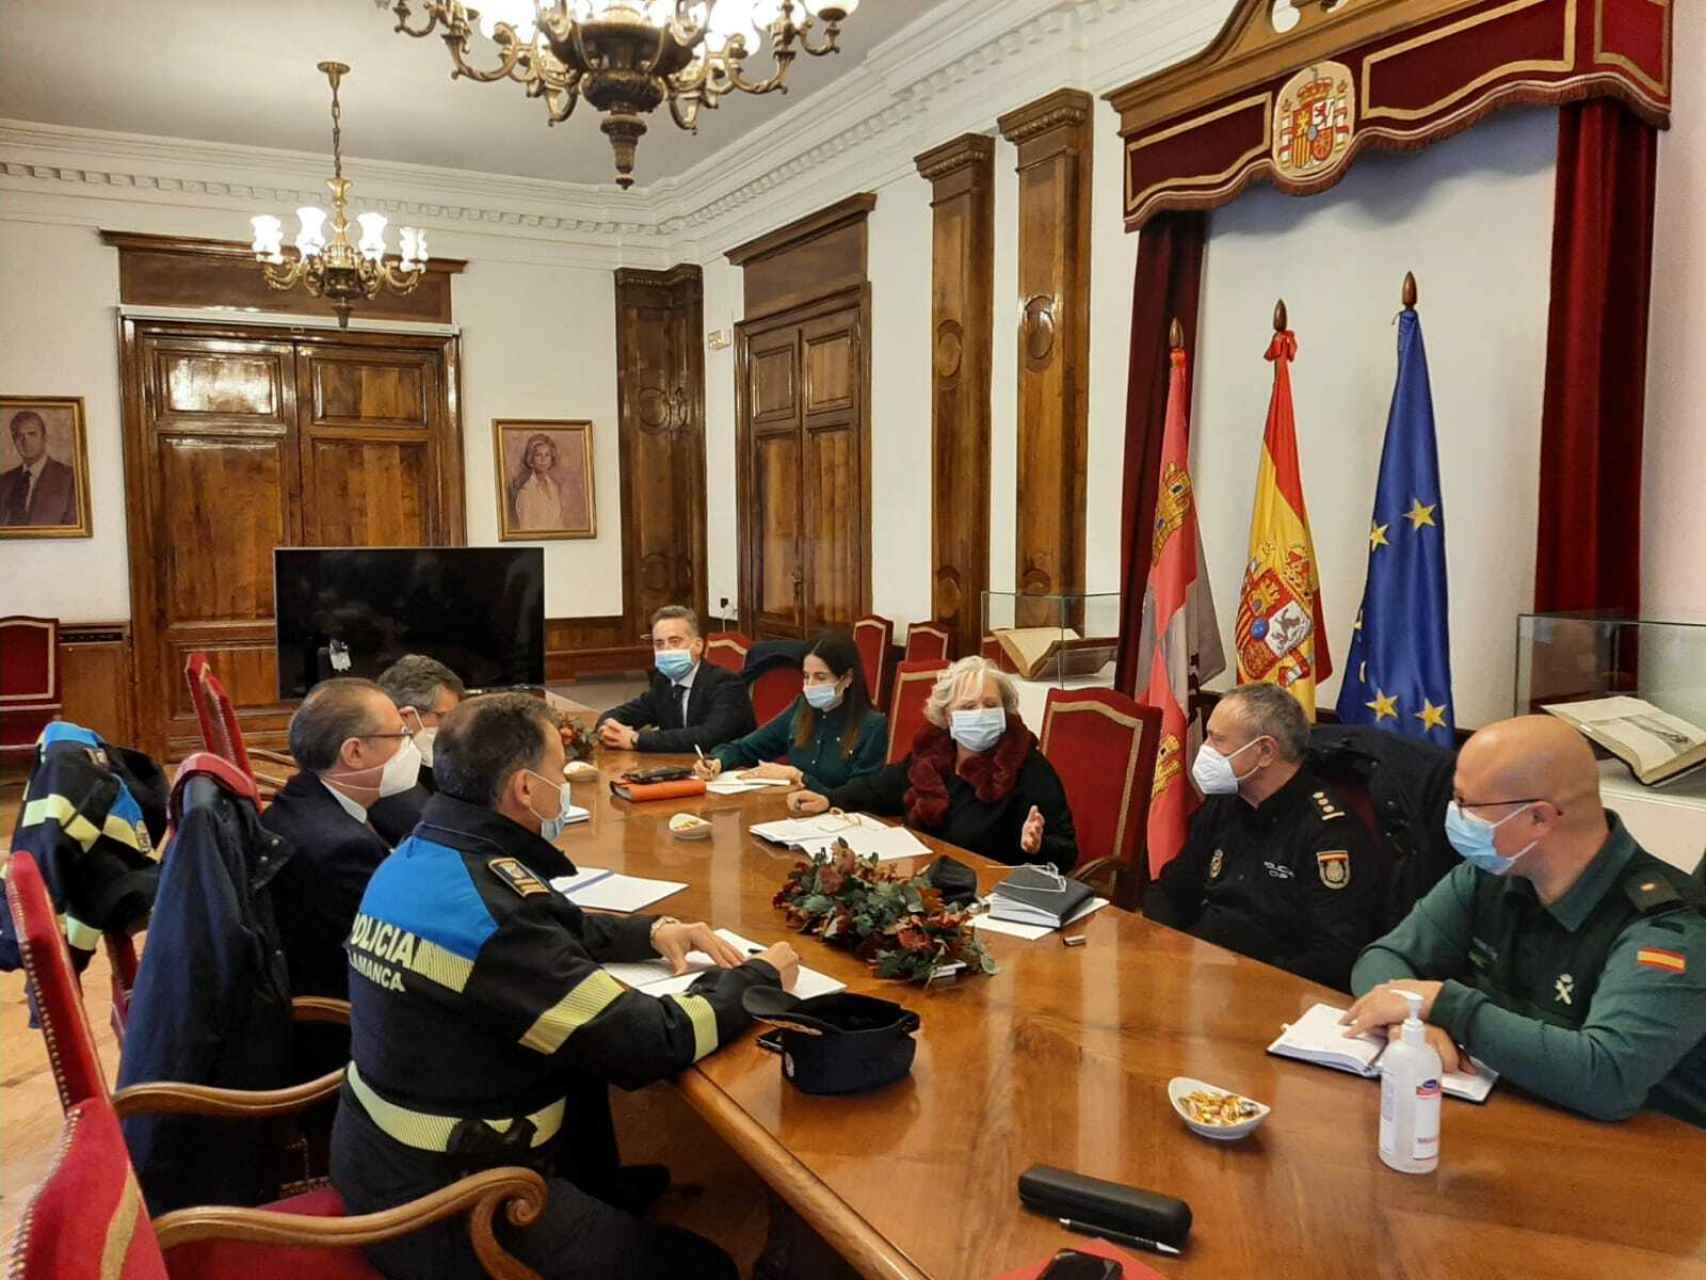 Reunión de la Junta Local de Seguridad Ciudadana de cara a la Semana Santa en Salamanca